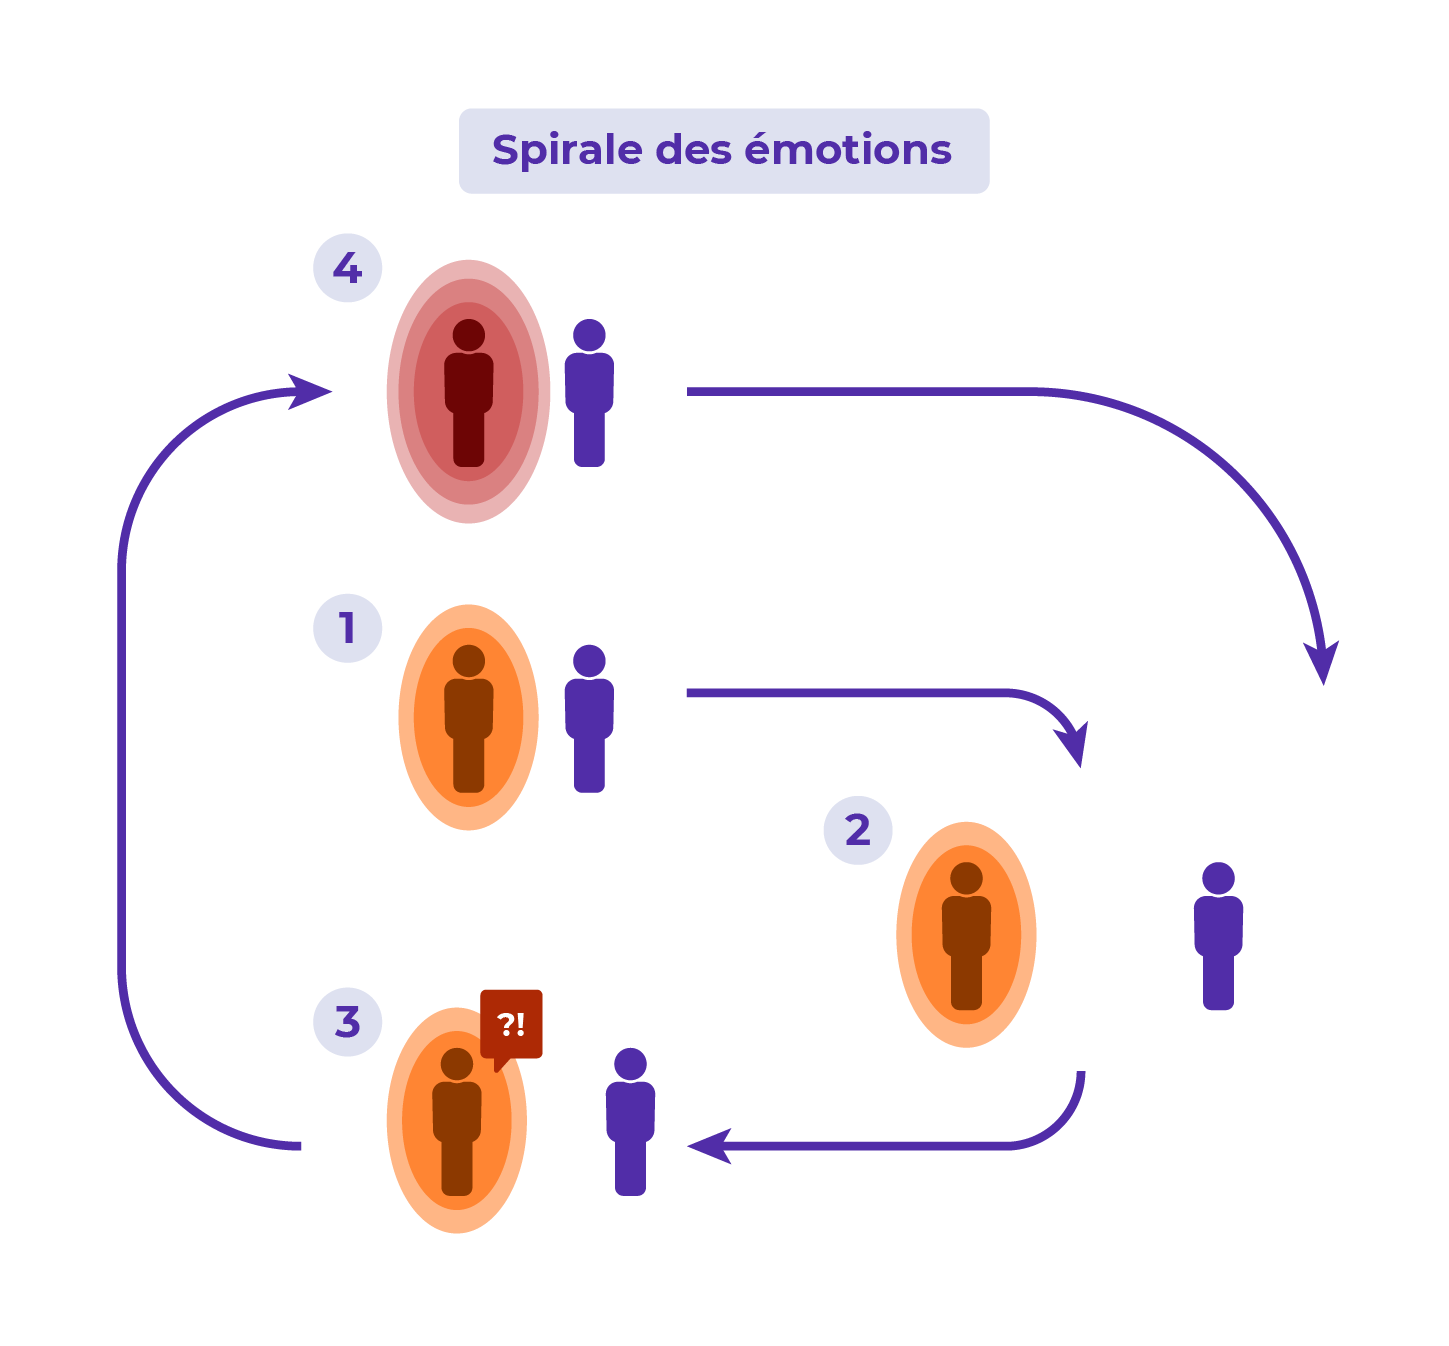 La spirale des émotions est un processus qui fonctionne en boucle et s'auto-renforce